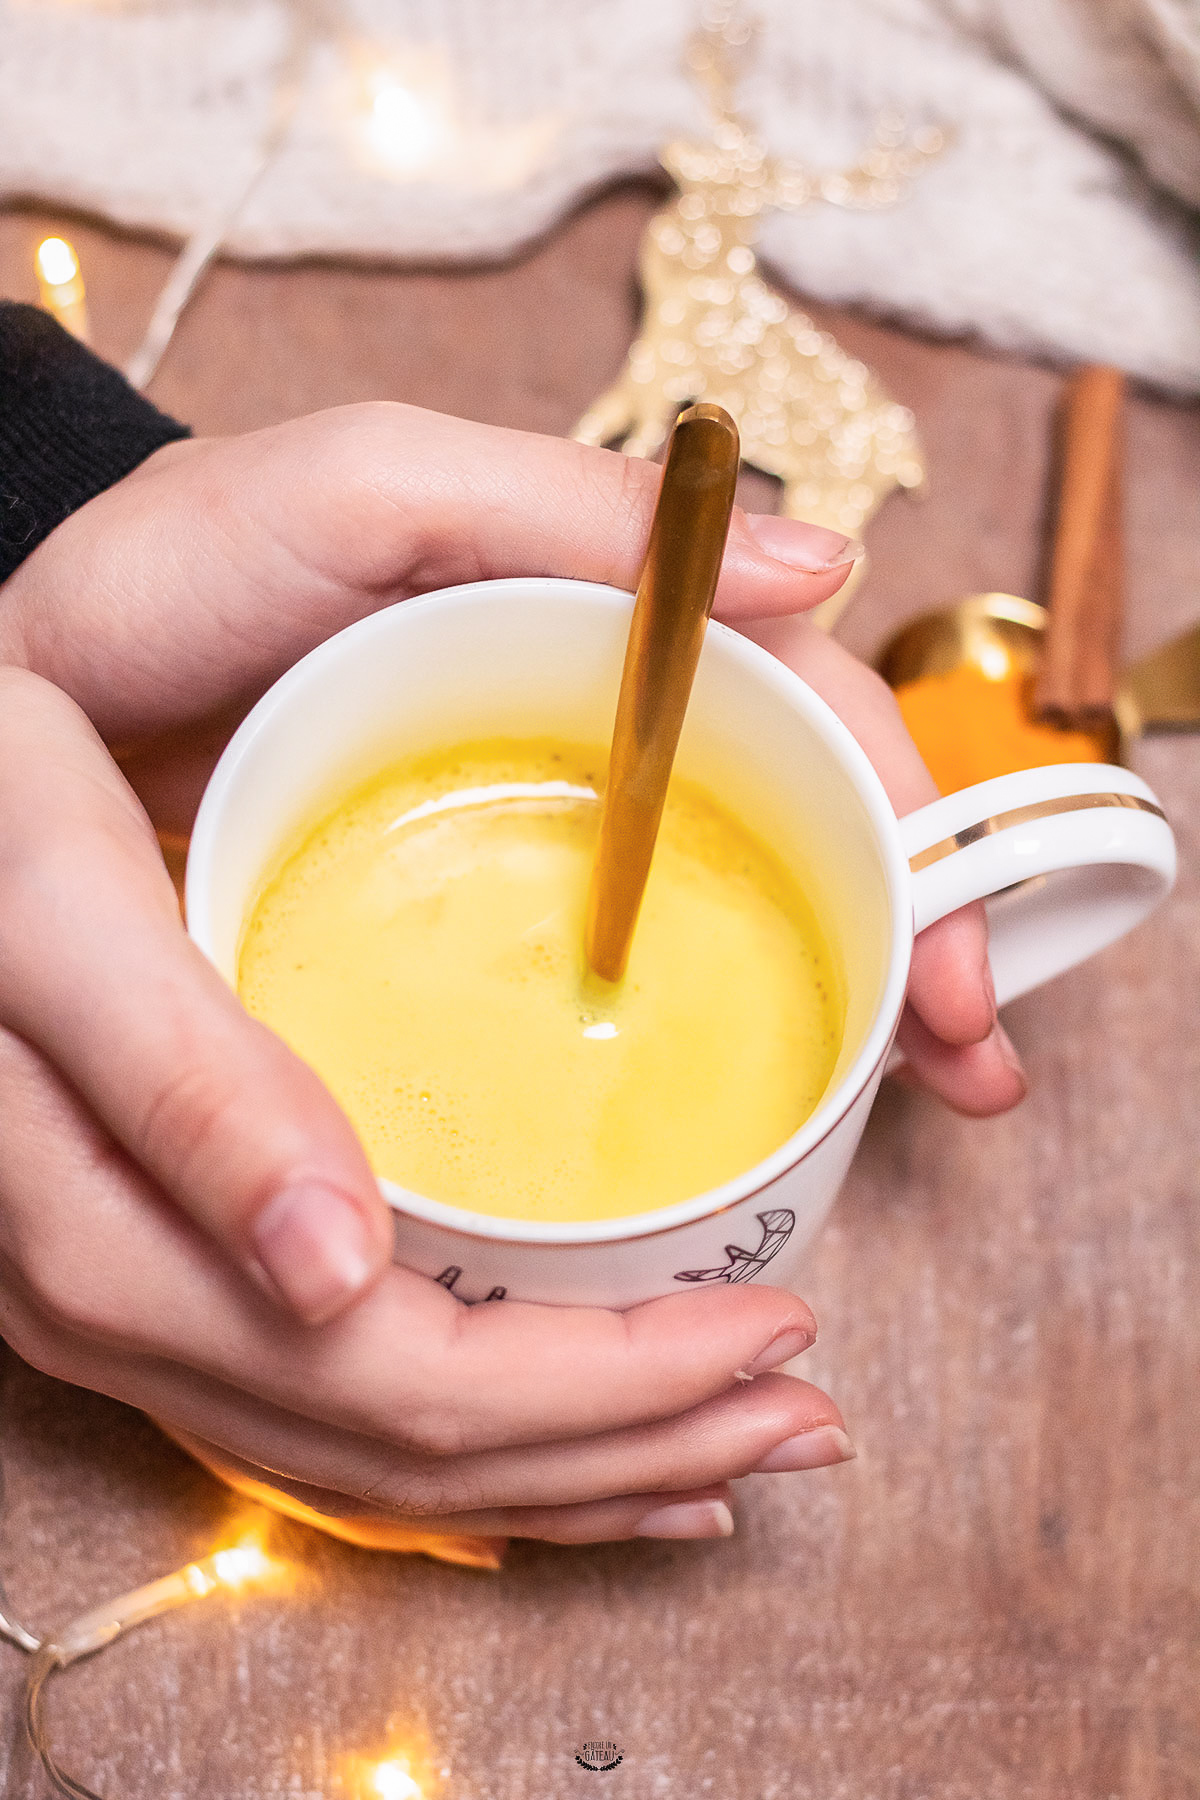 Découvrez la recette du Golden Latte traditionnel